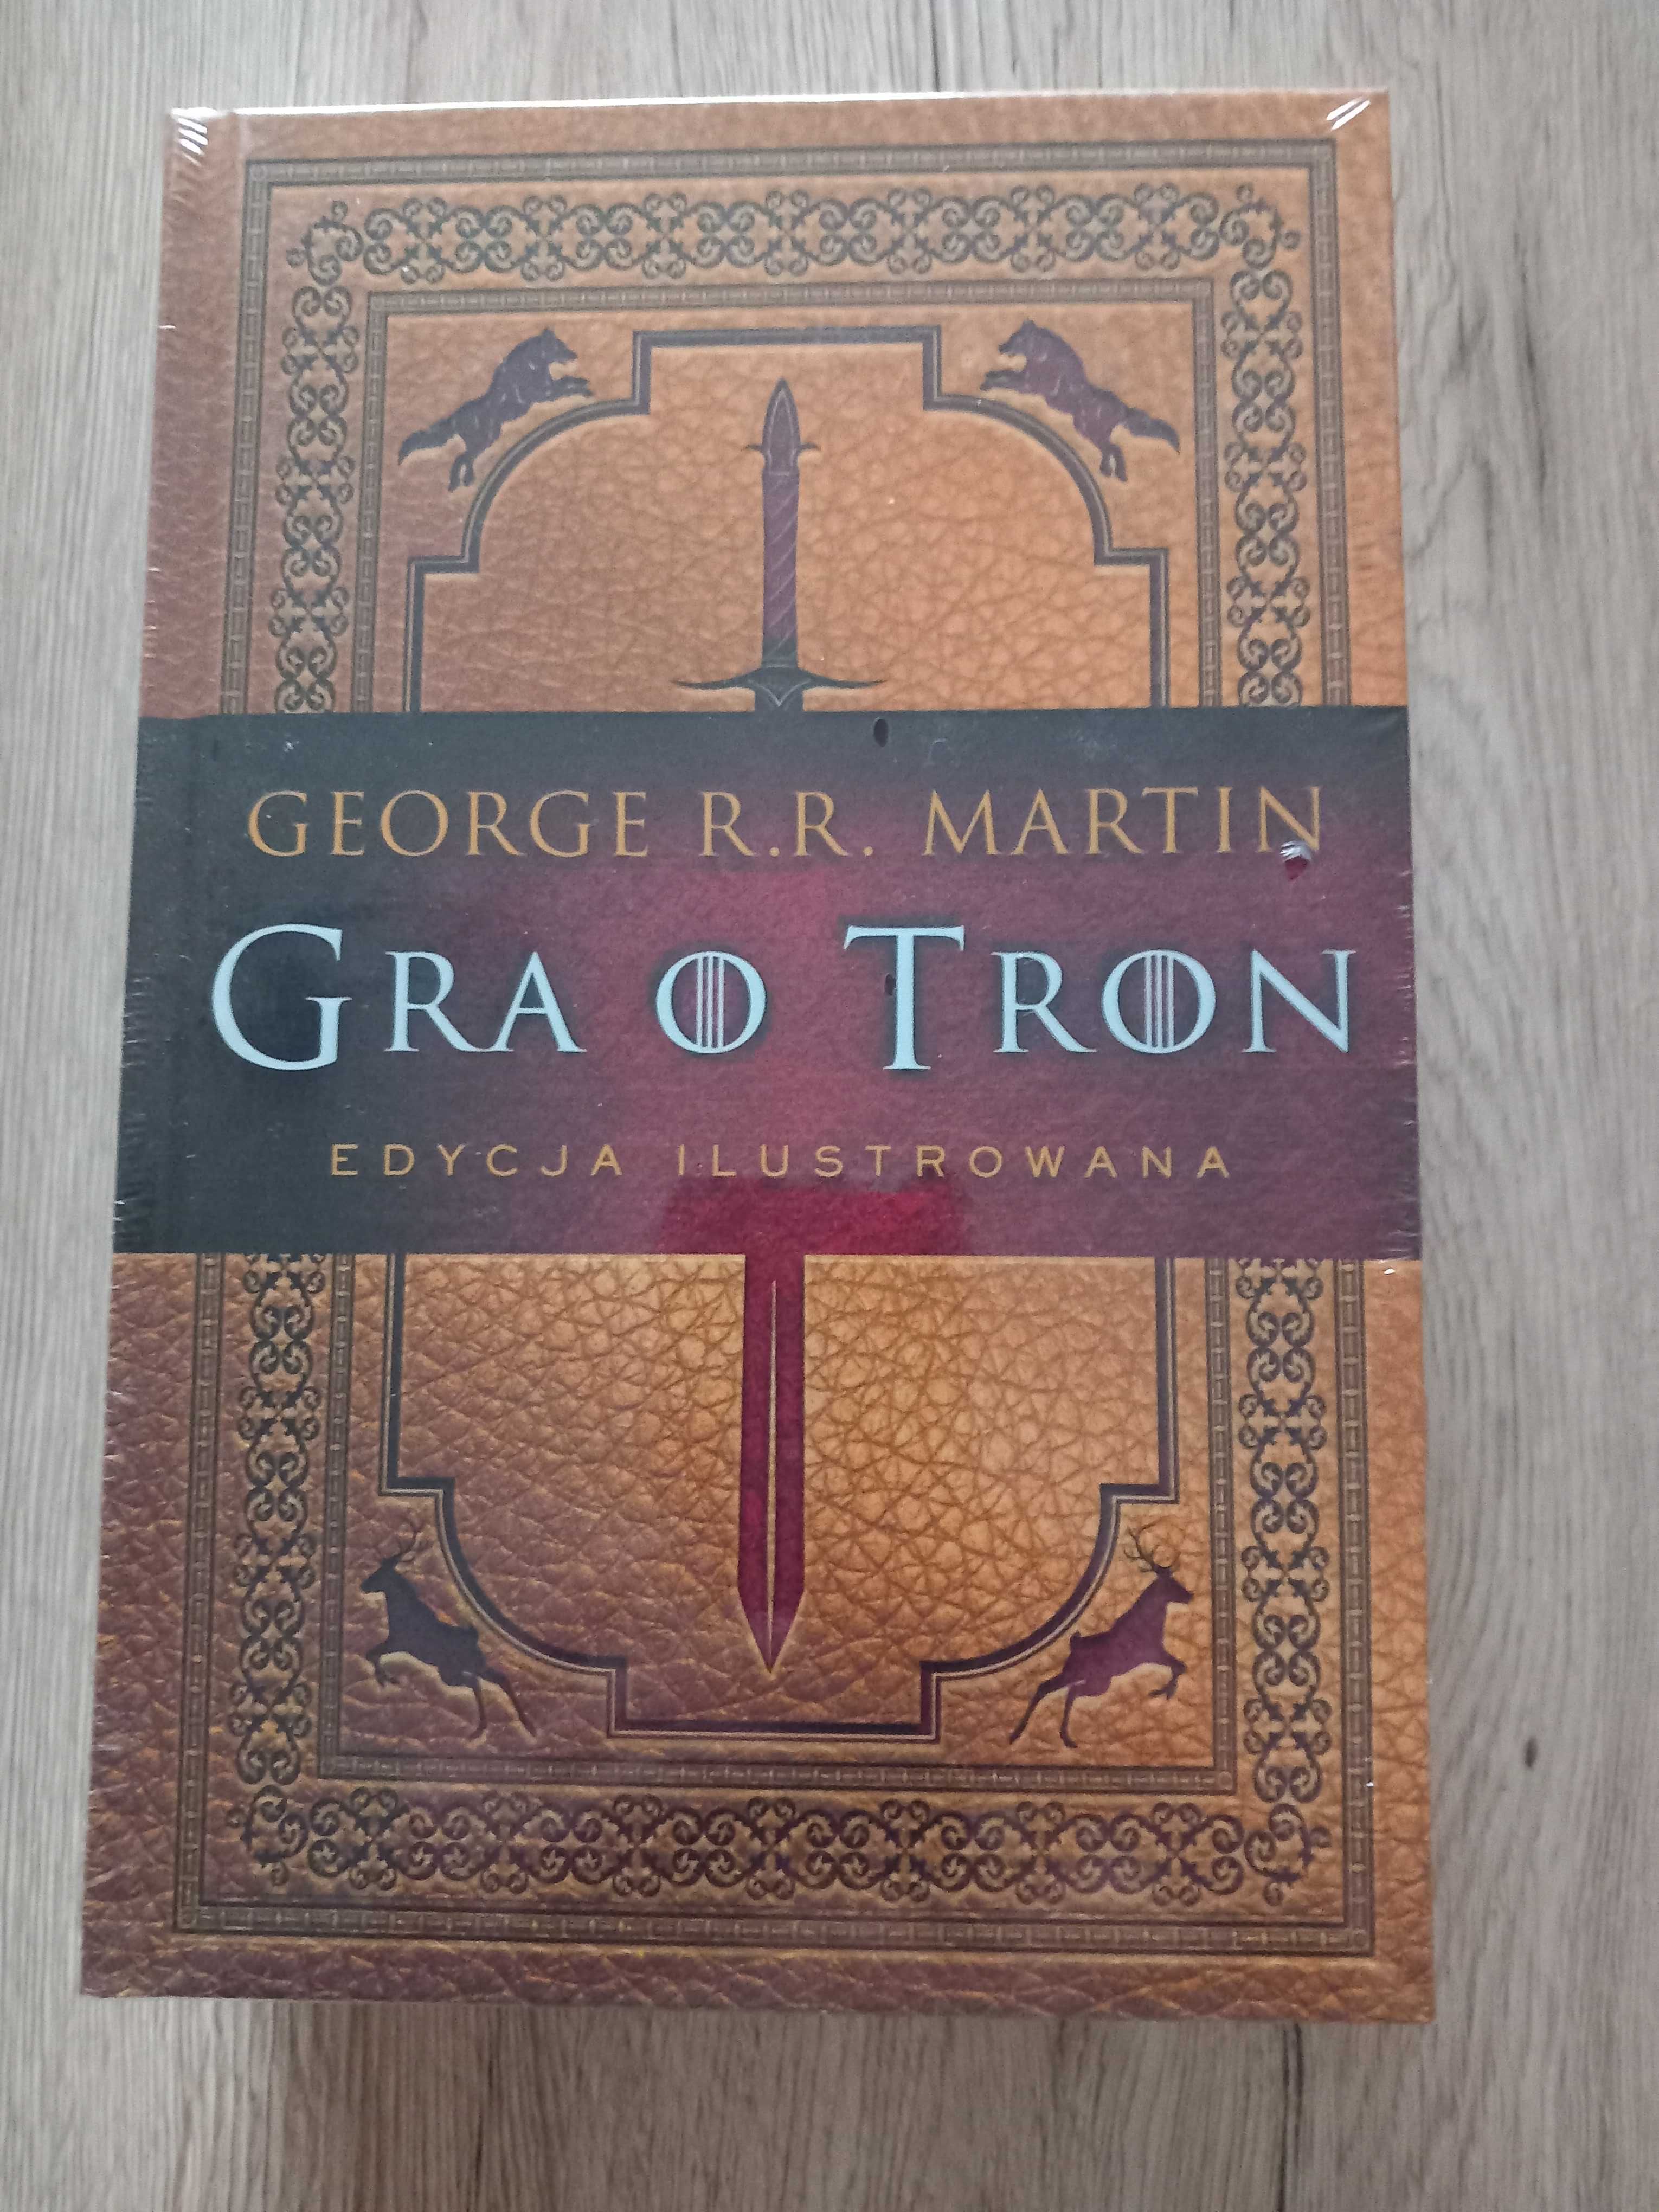 Gra o tron Edycja ilustrowana George R.R. Martin nowa/folia